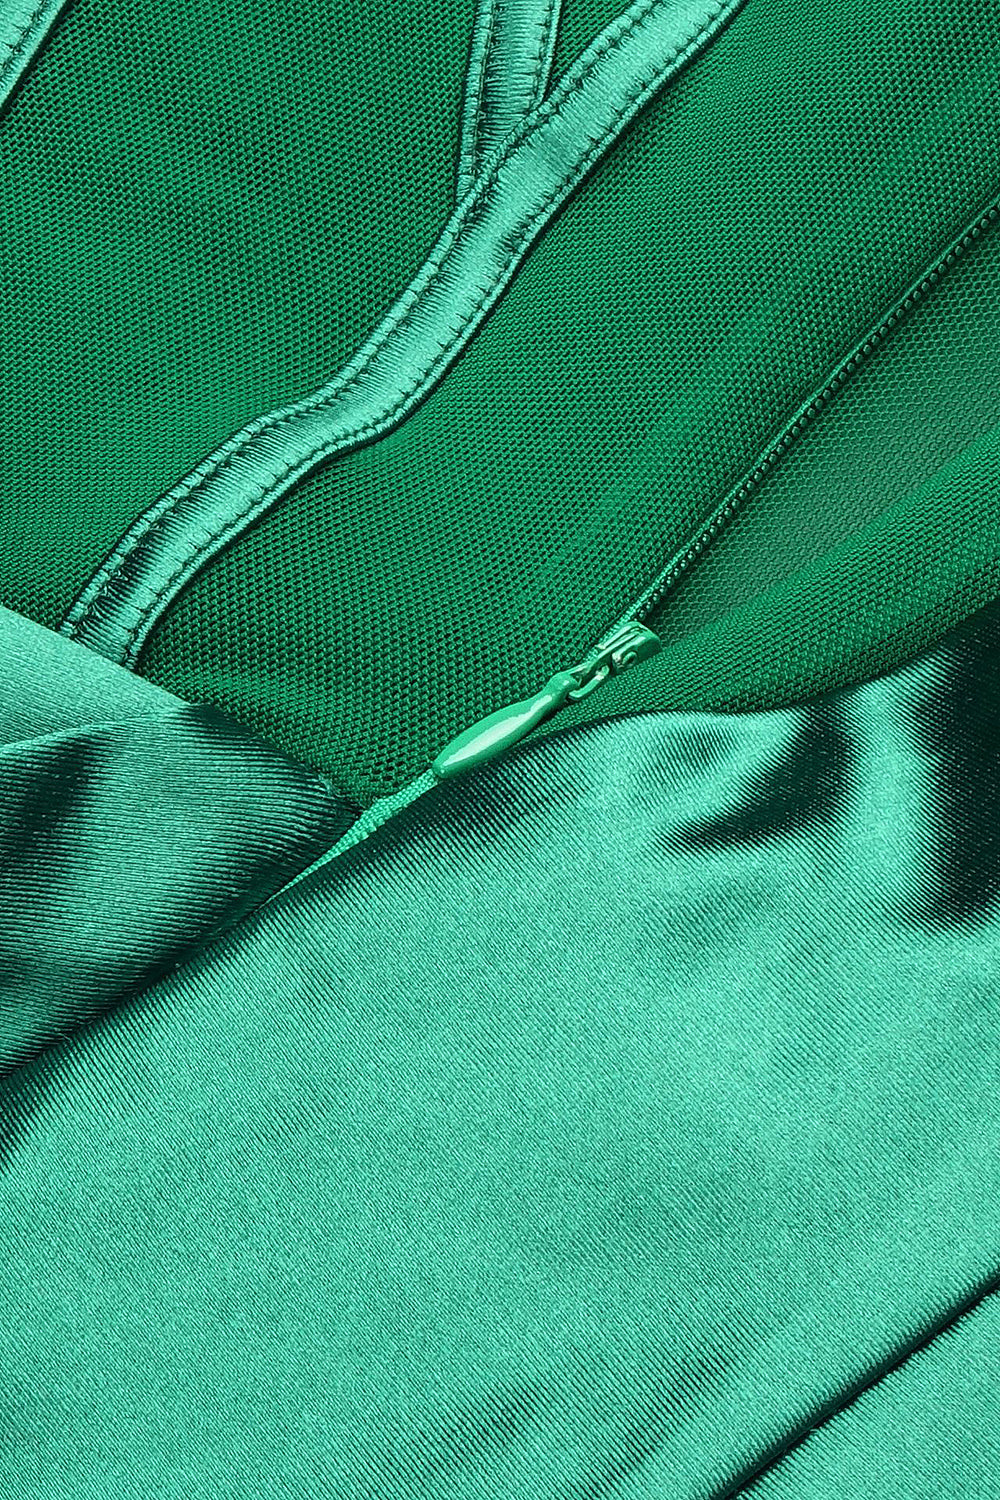 Vestido largo de malla con panel sin mangas y un solo hombro verde